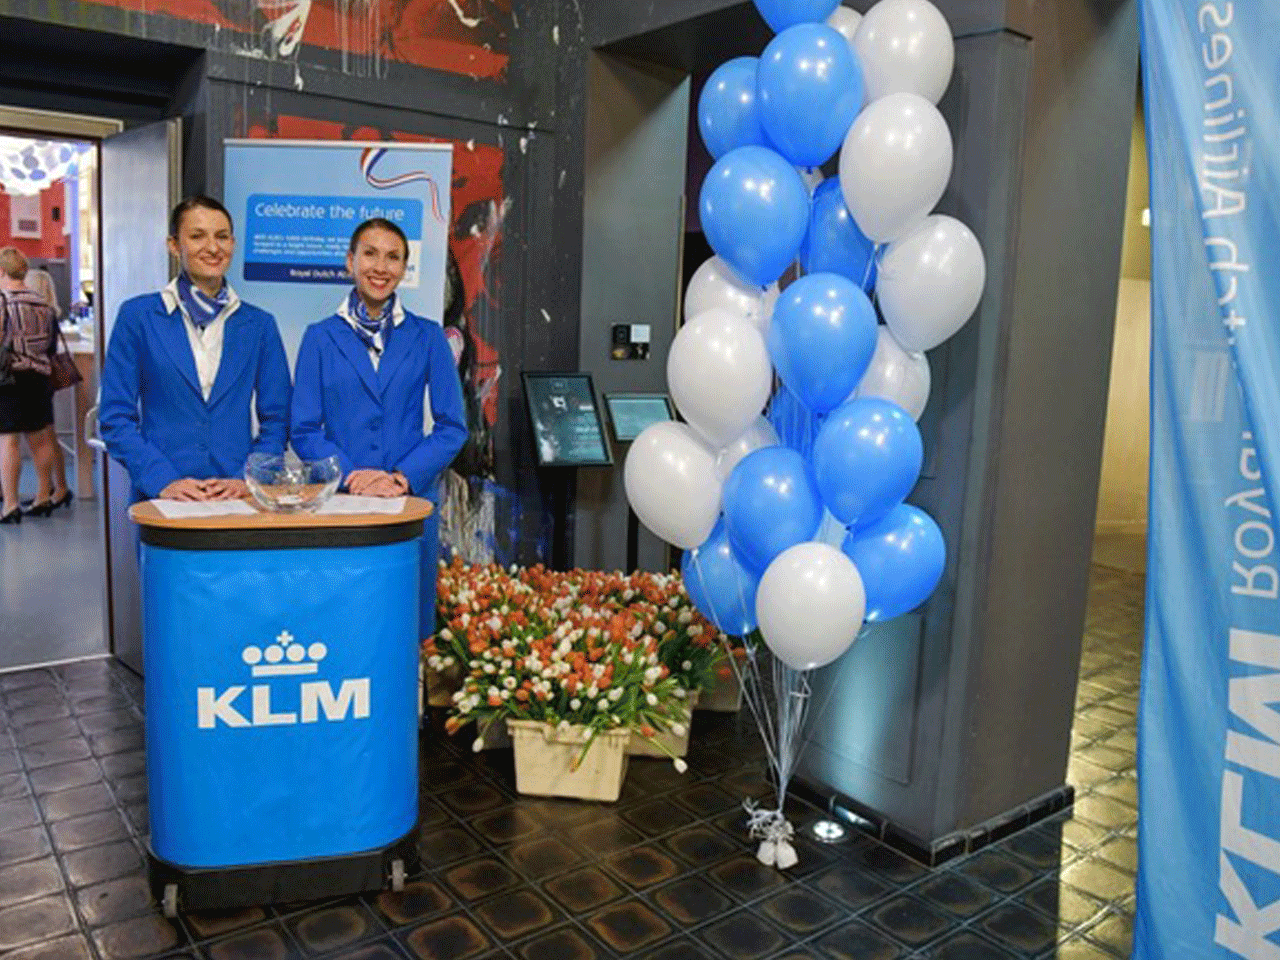 100 let výročí KLM Royal Dutch Airlines